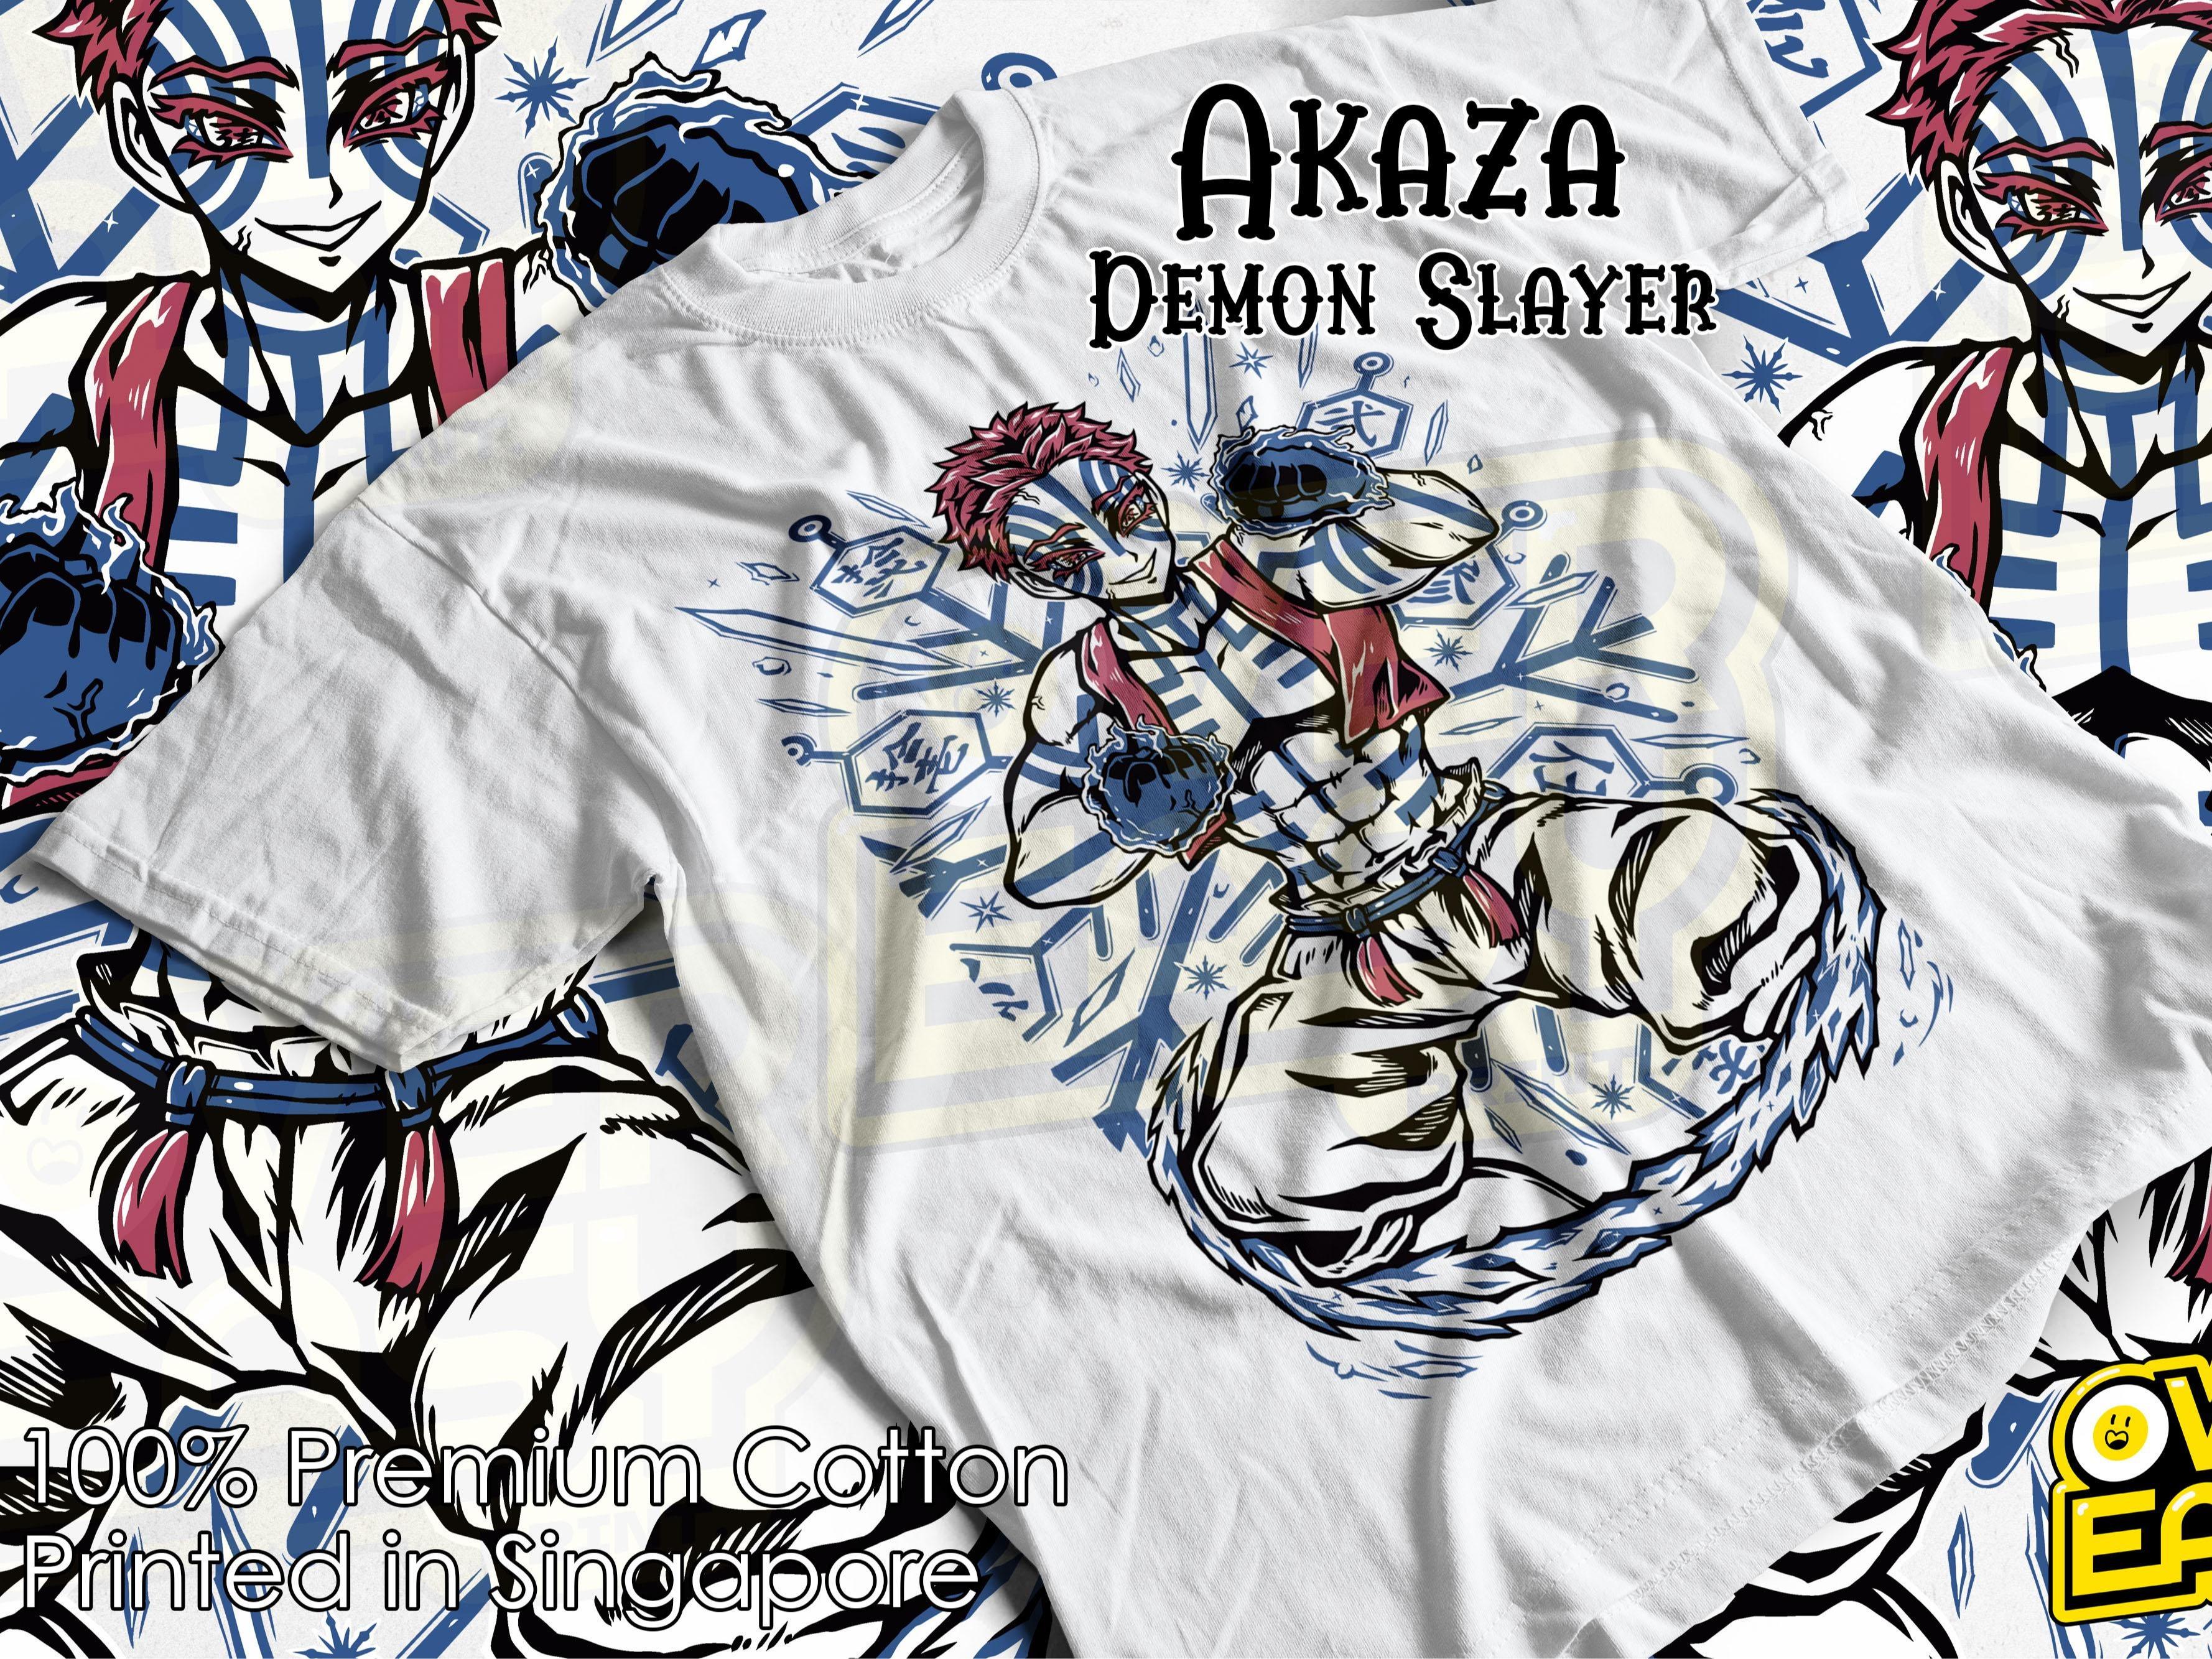 Akaza Demon Slayer FANART Anime T-Shirt